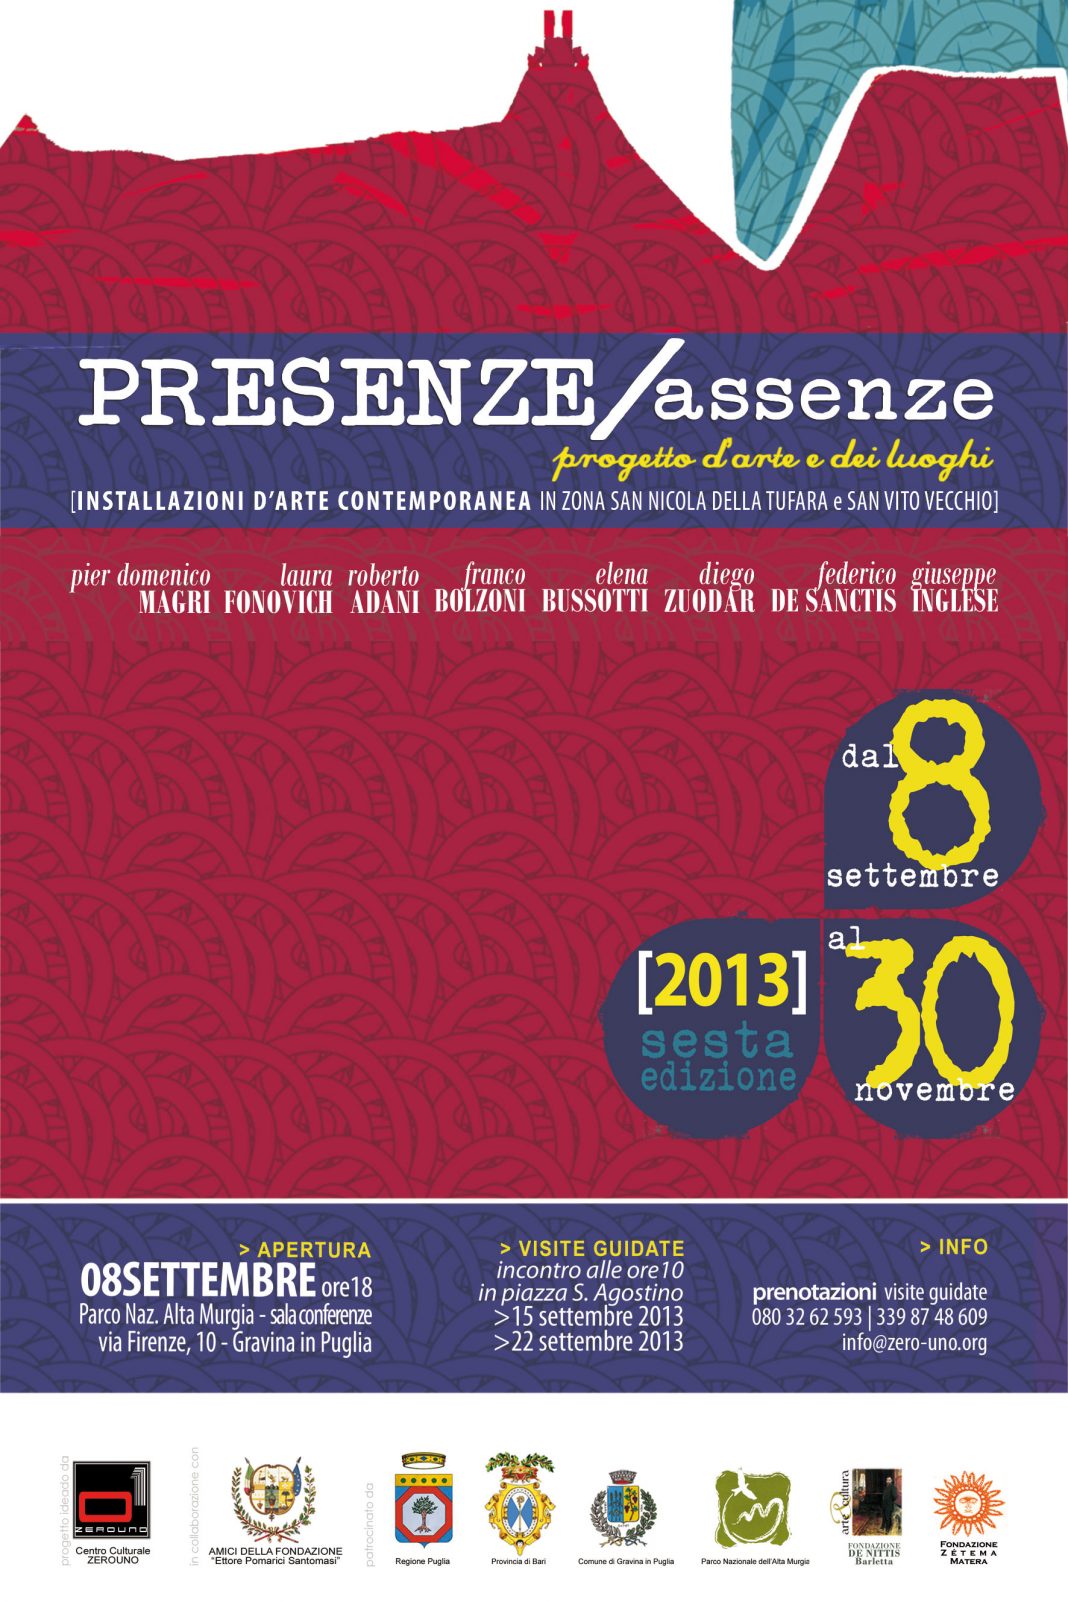 Presenze Assenze  VI edizionehttps://www.exibart.com/repository/media/eventi/2013/08/presenze-assenze-vi-edizione-1068x1602.jpg